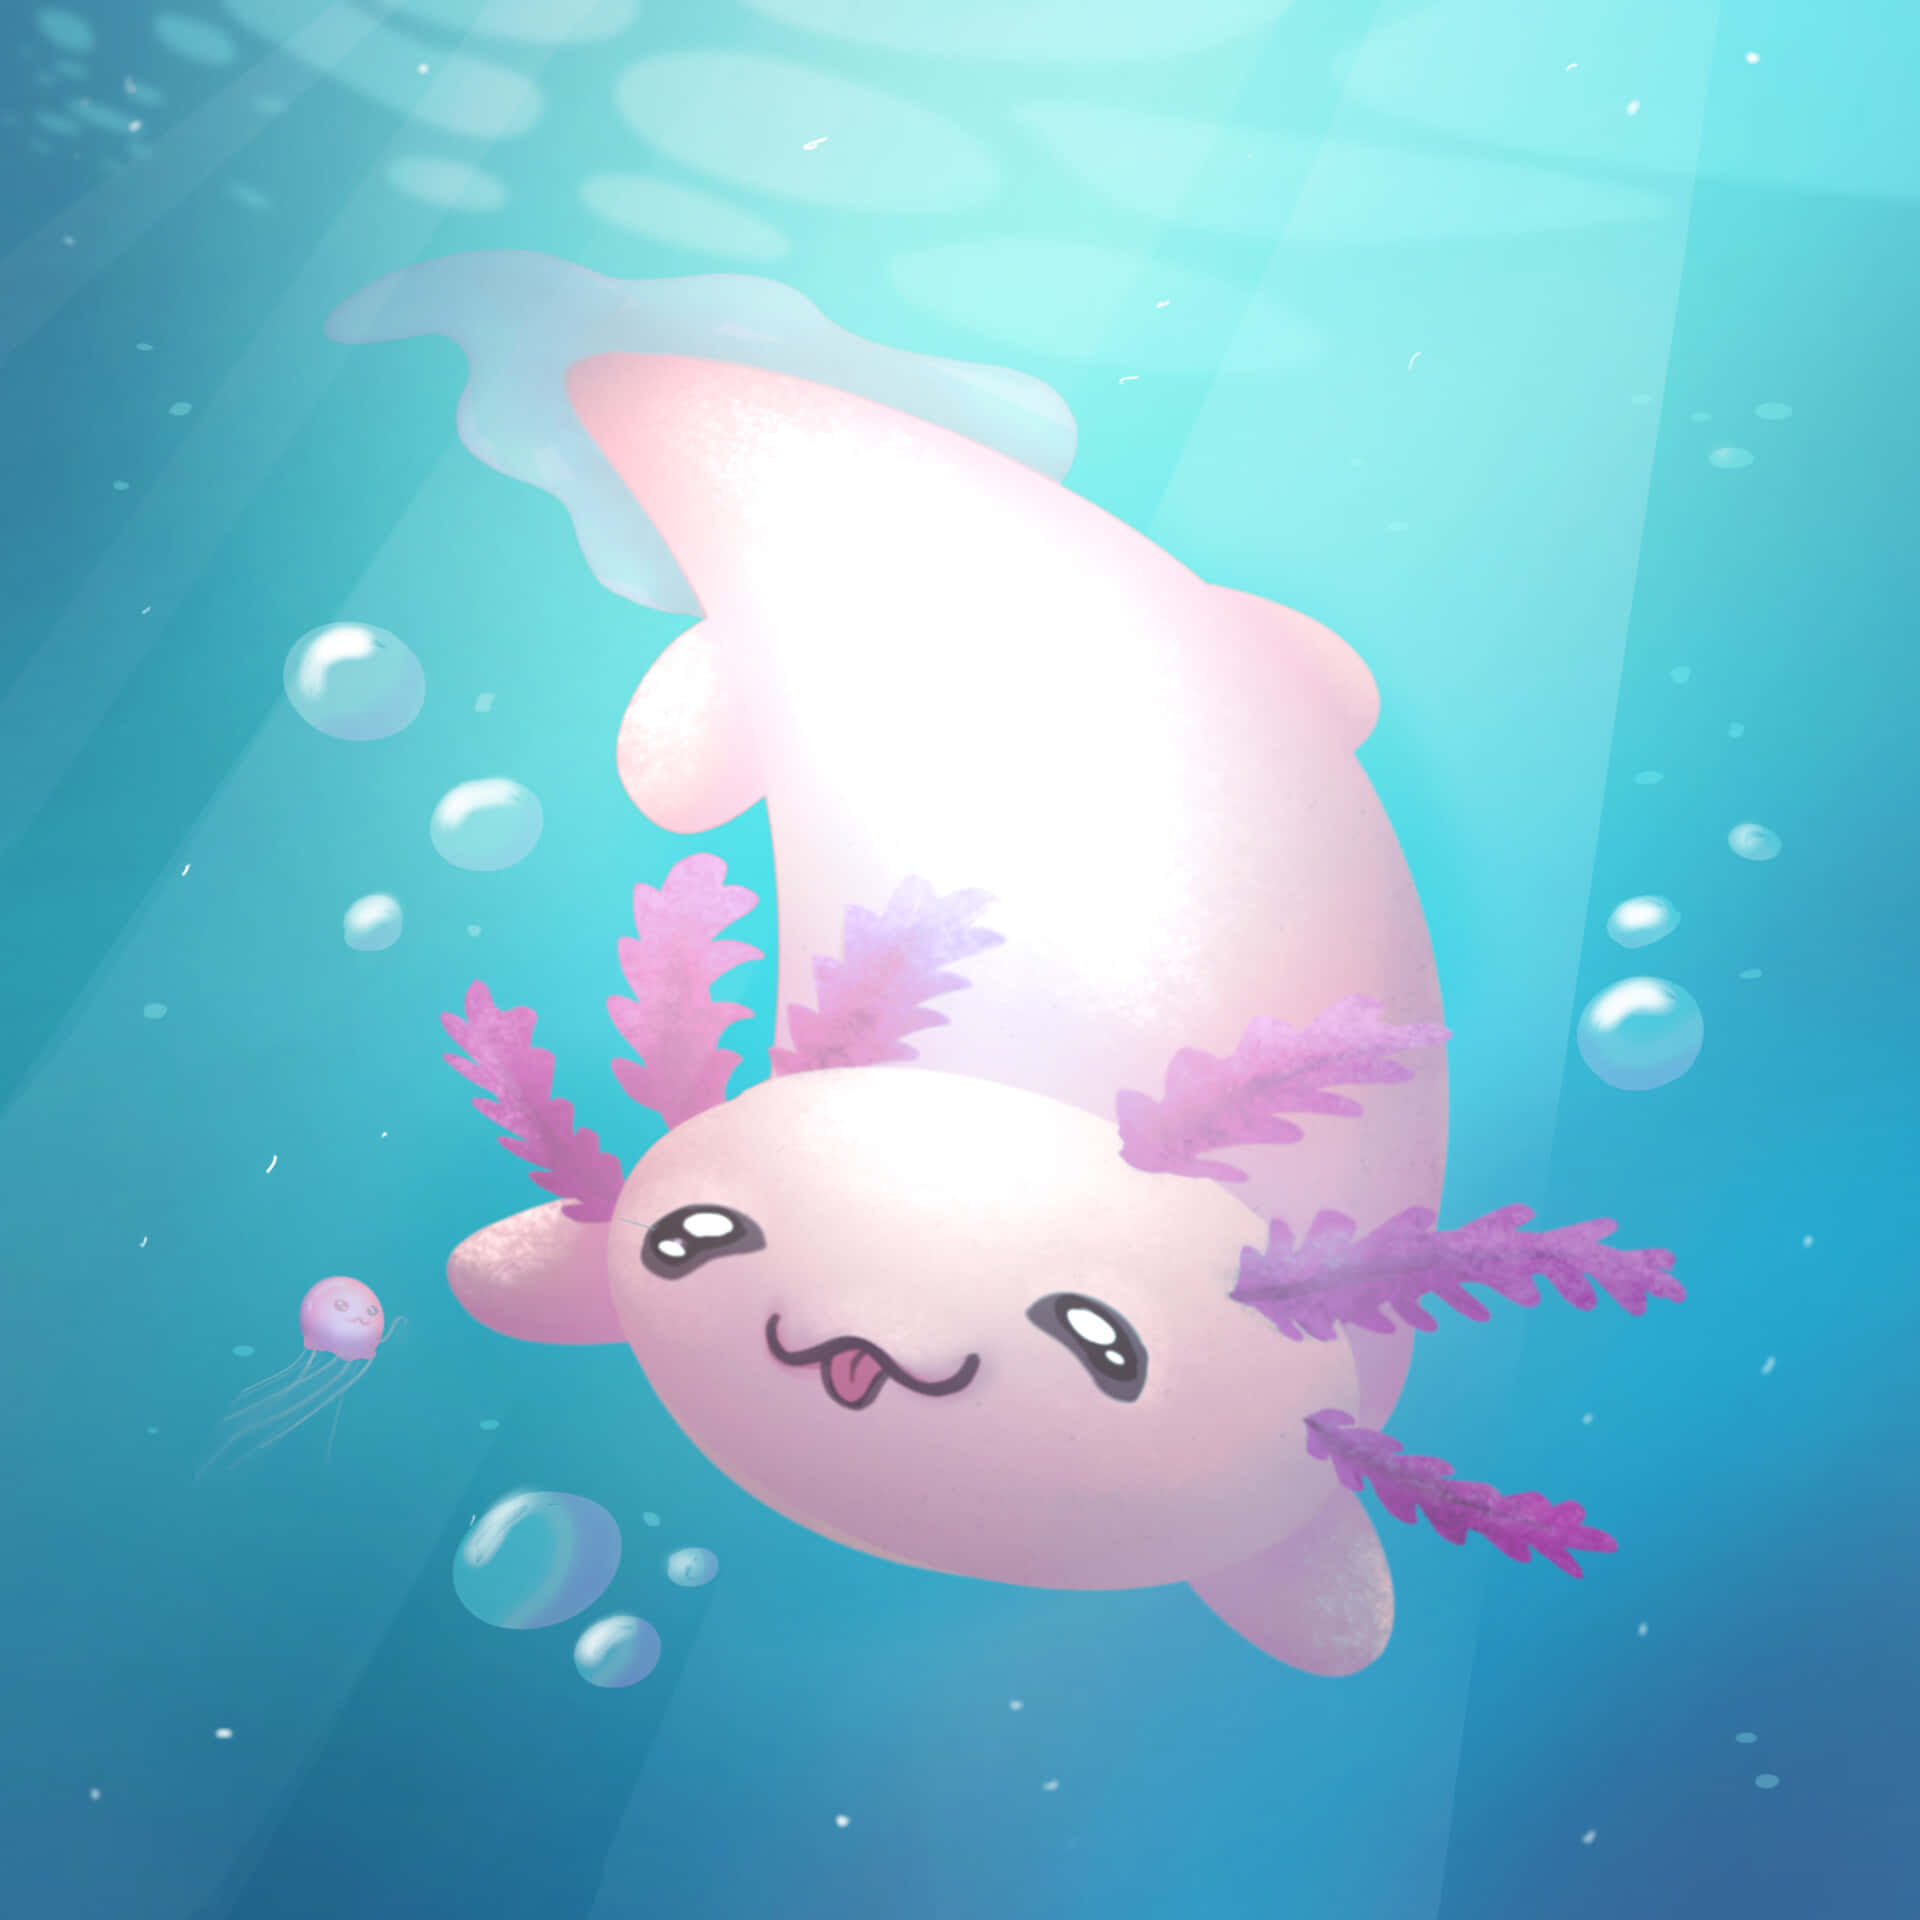 A Beautiful Axolotl Swimming